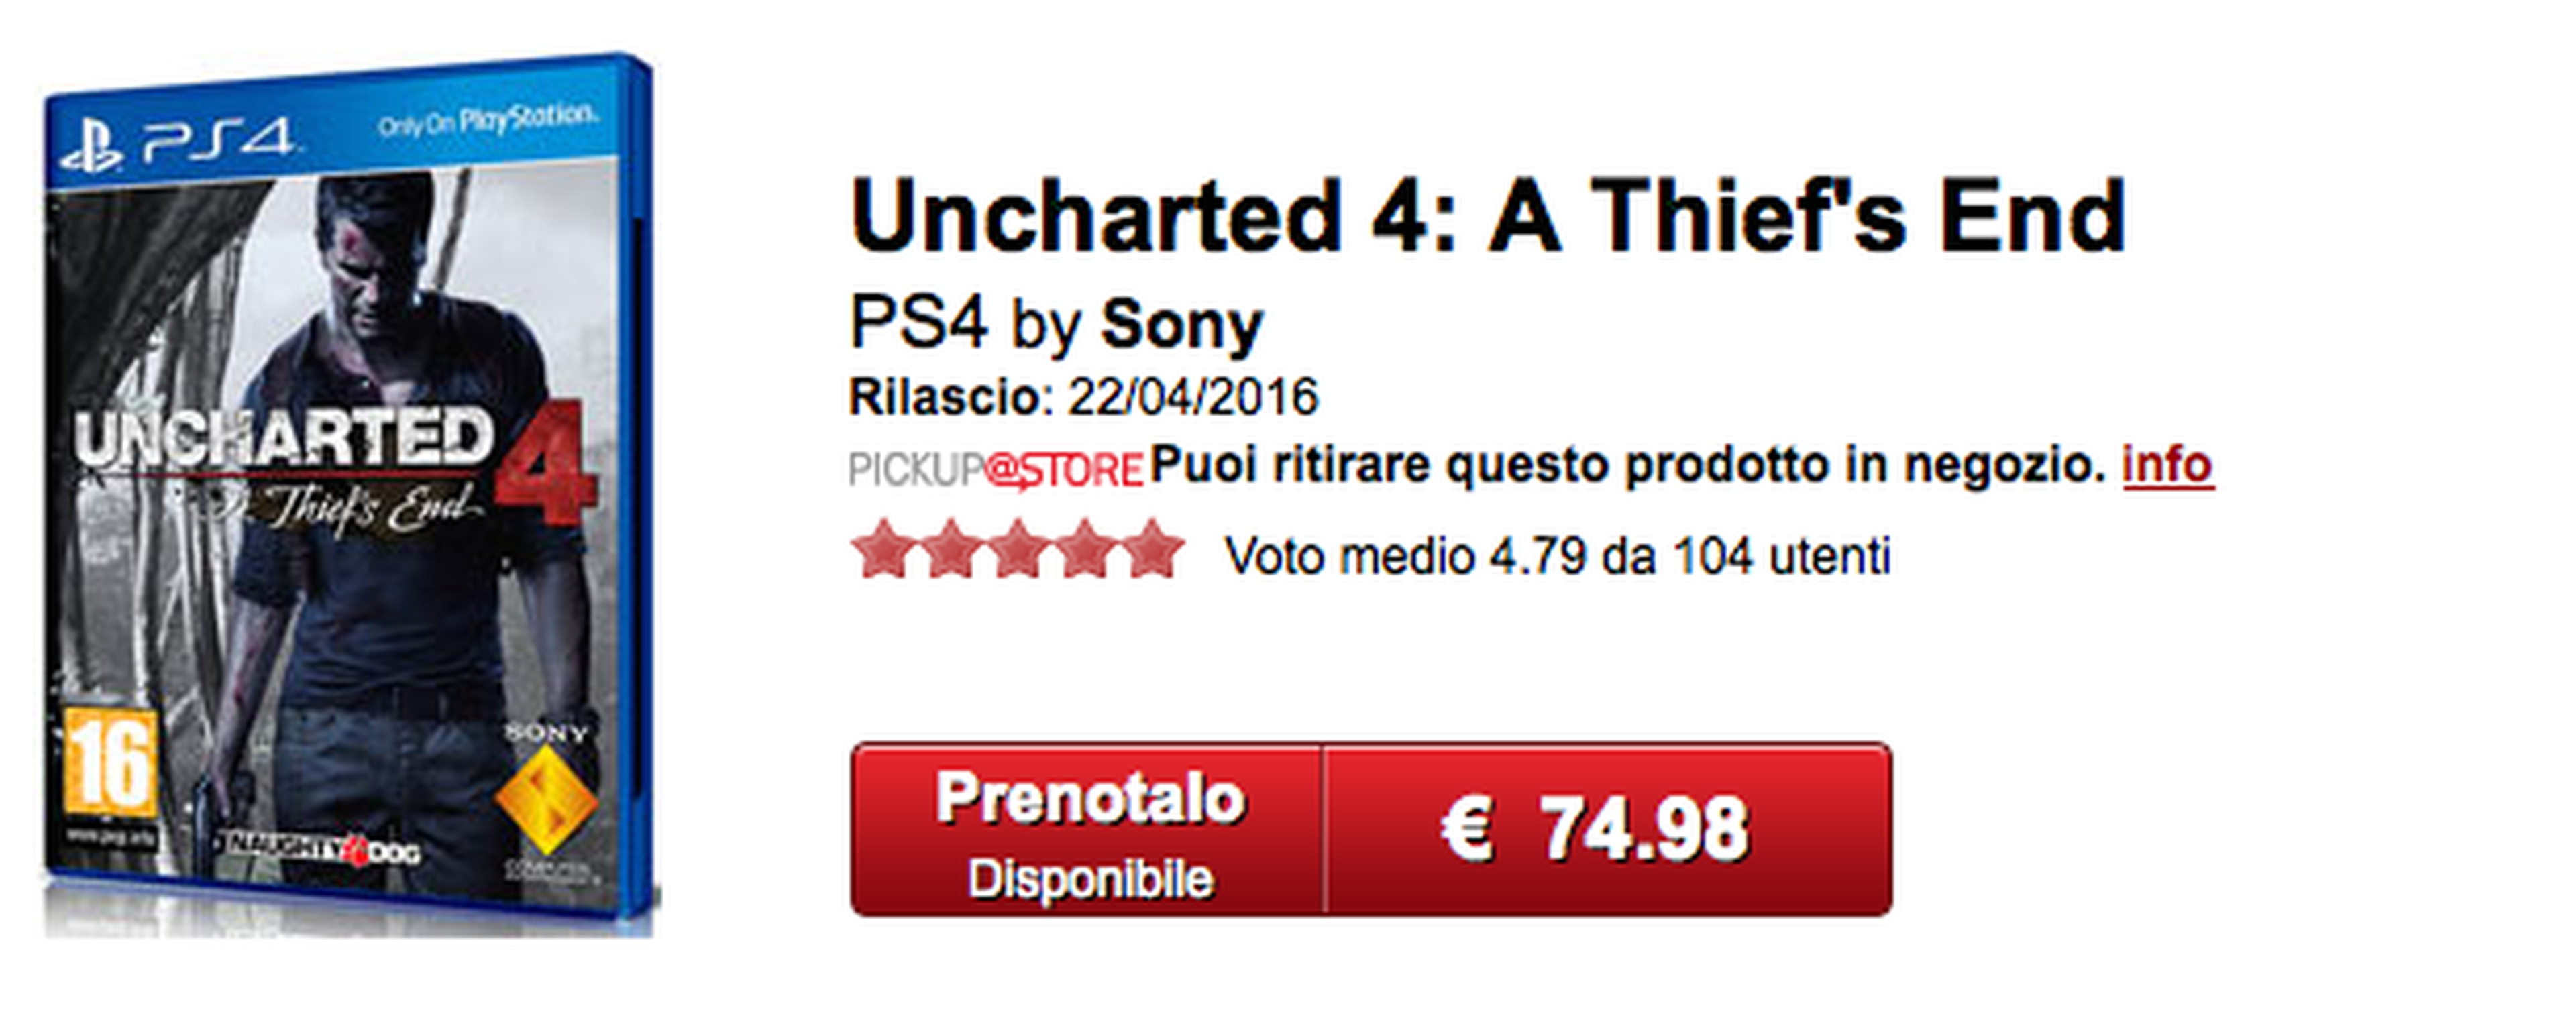 Uncharted 4 podría tener nueva fecha de lanzamiento